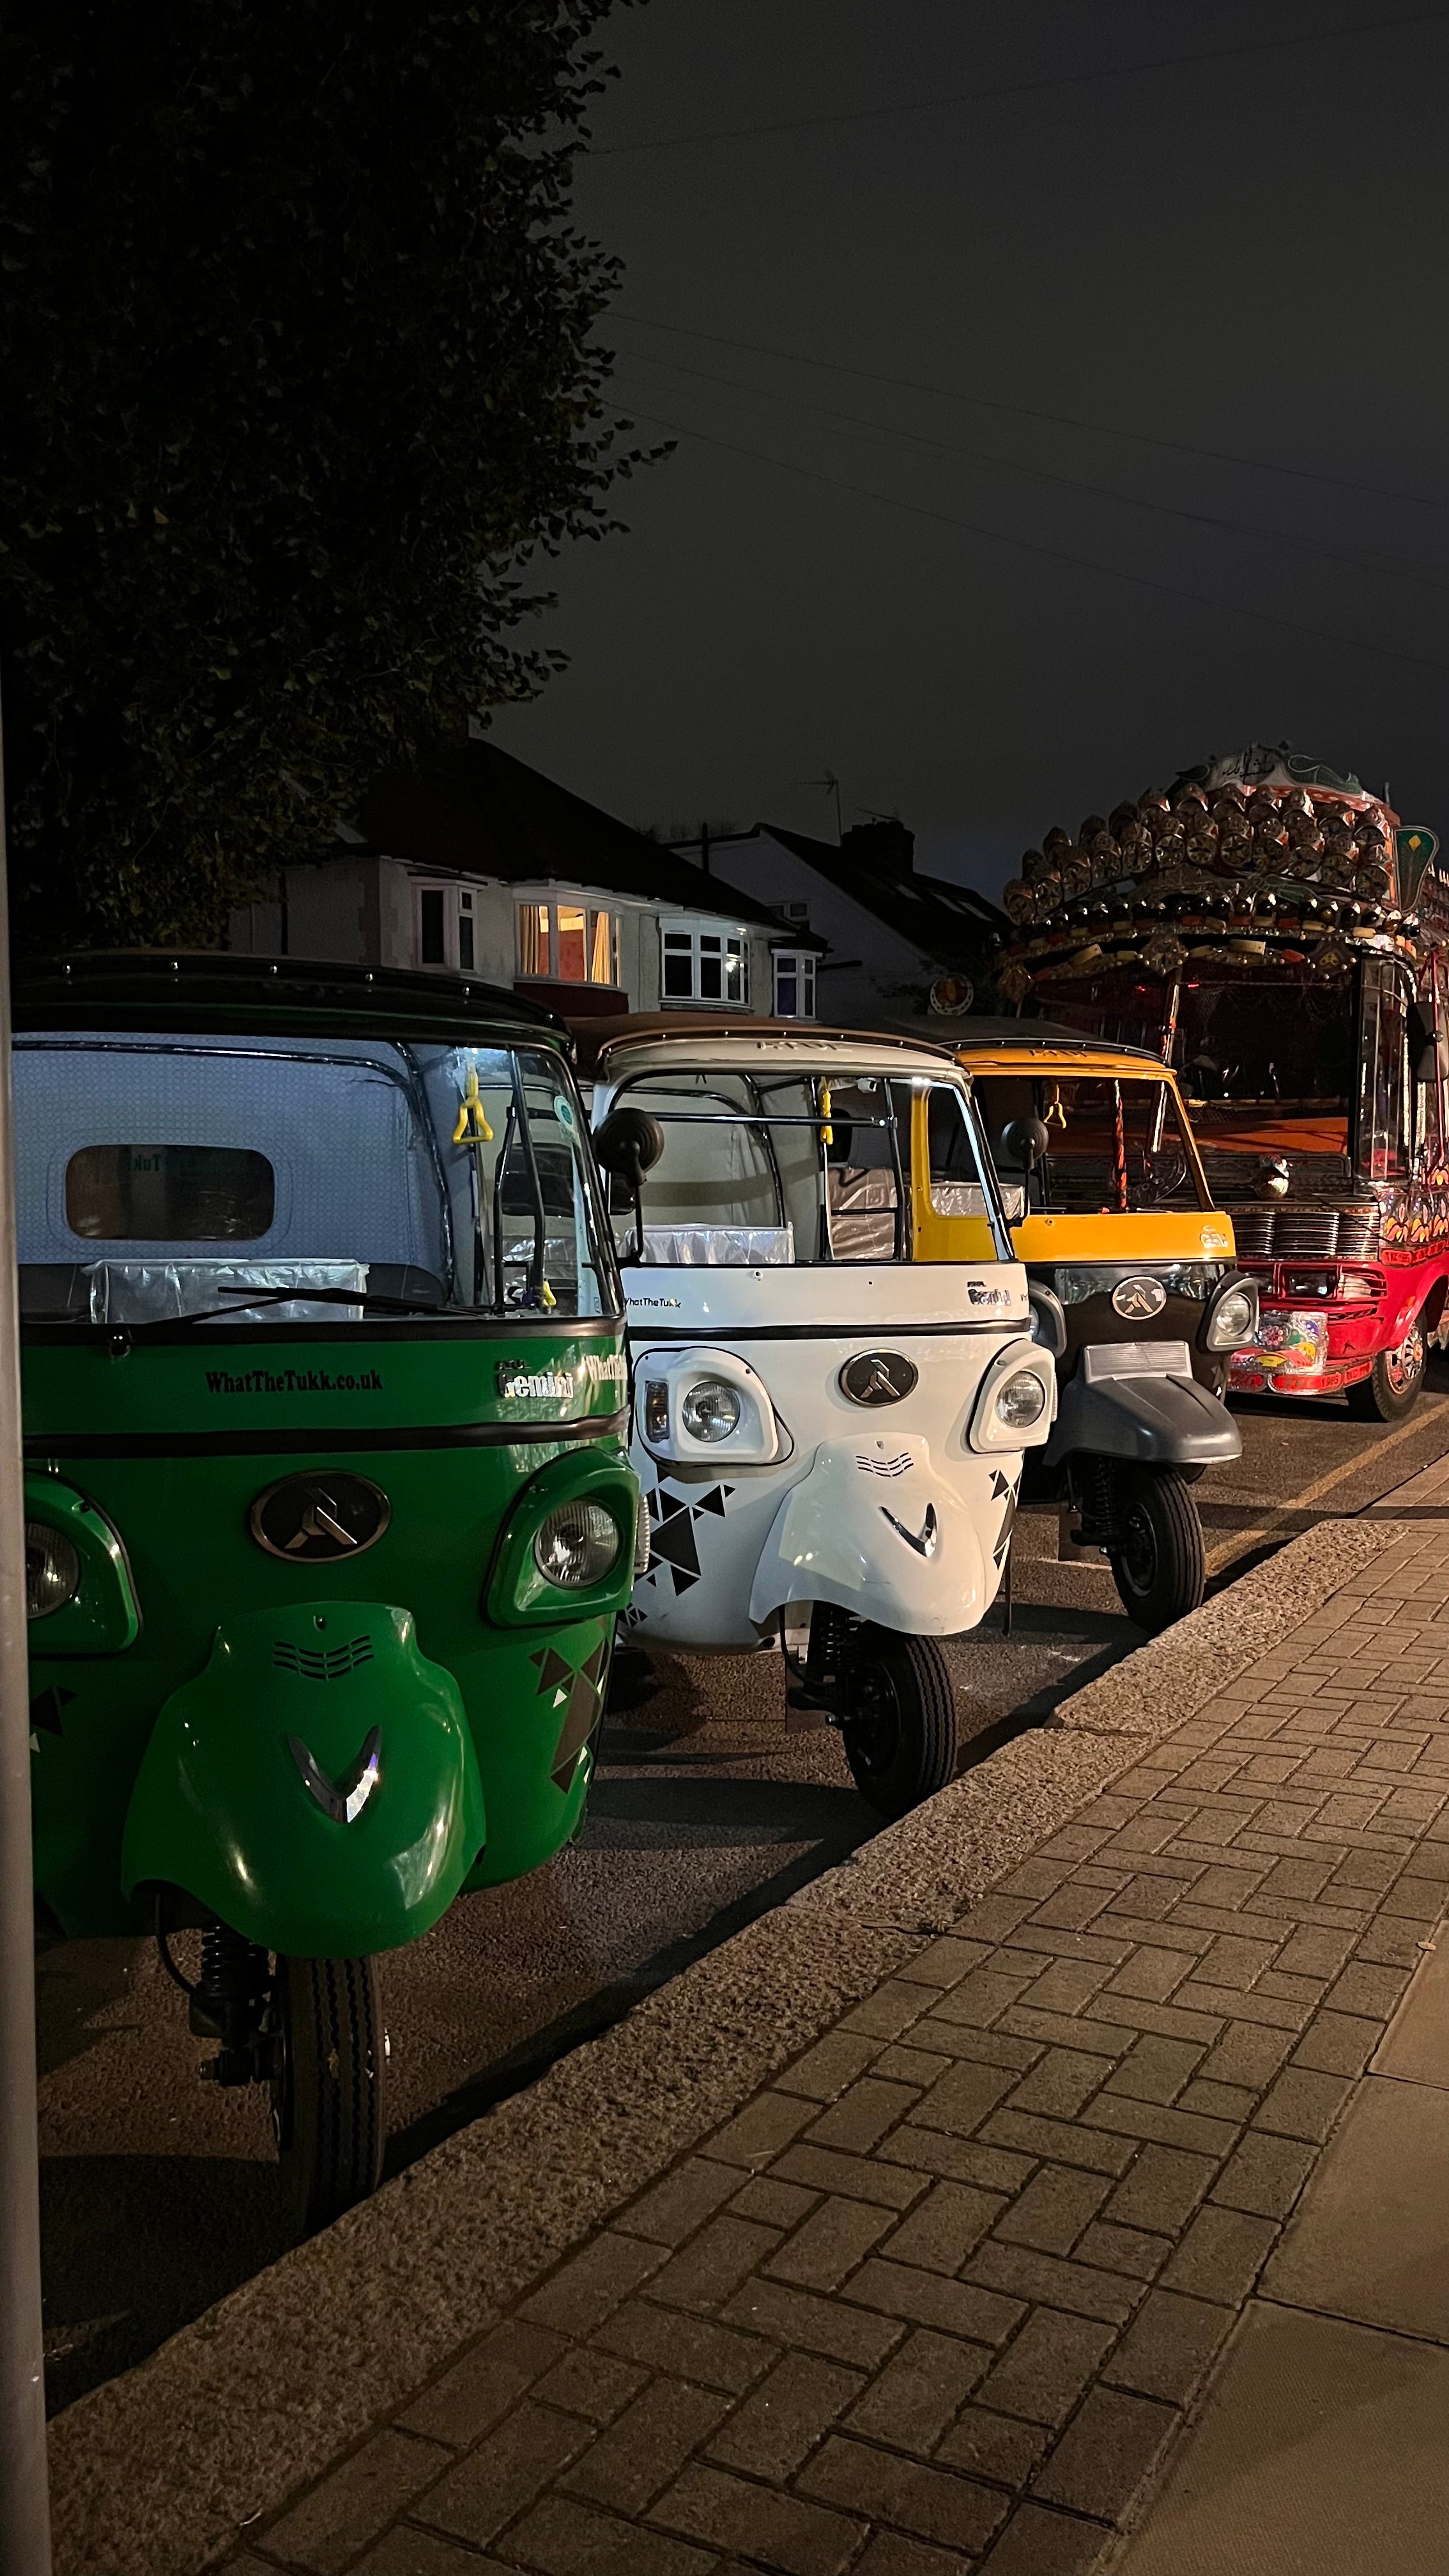 Original Imported Indian Tuk Tuk Rickshaw in Various Colours